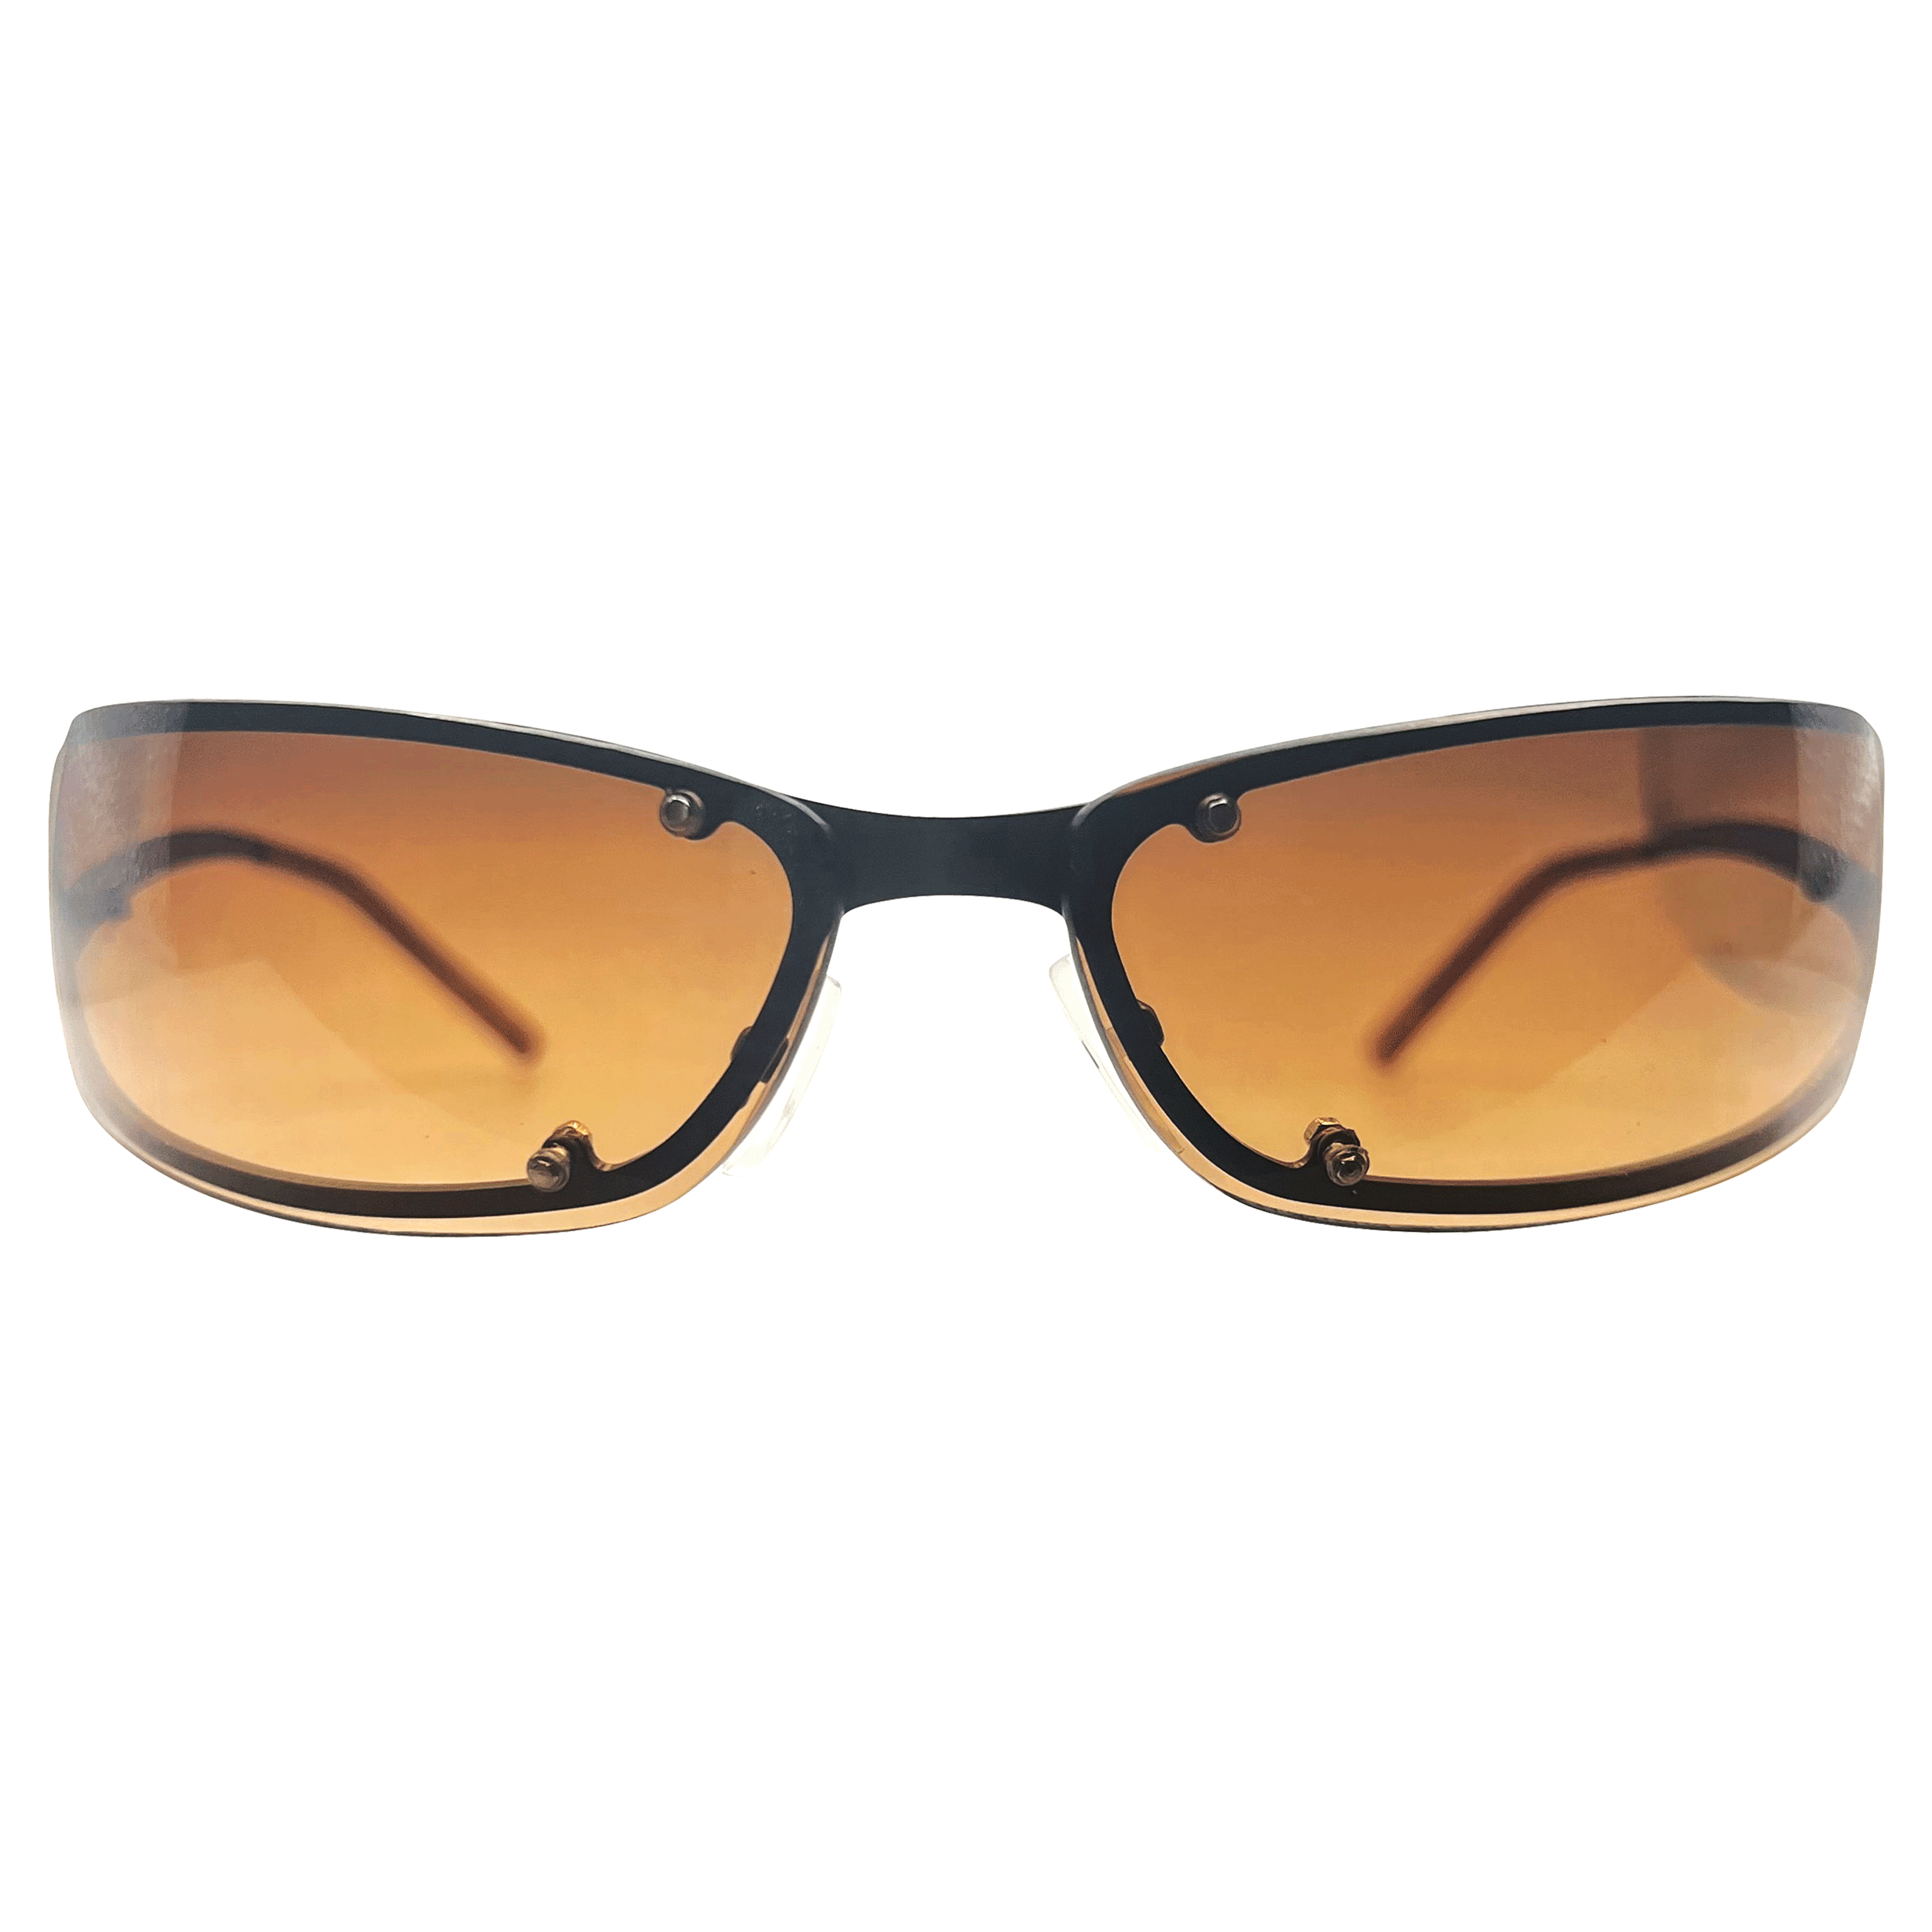 DAIKON Amber/Copper Fashion Sunglasses